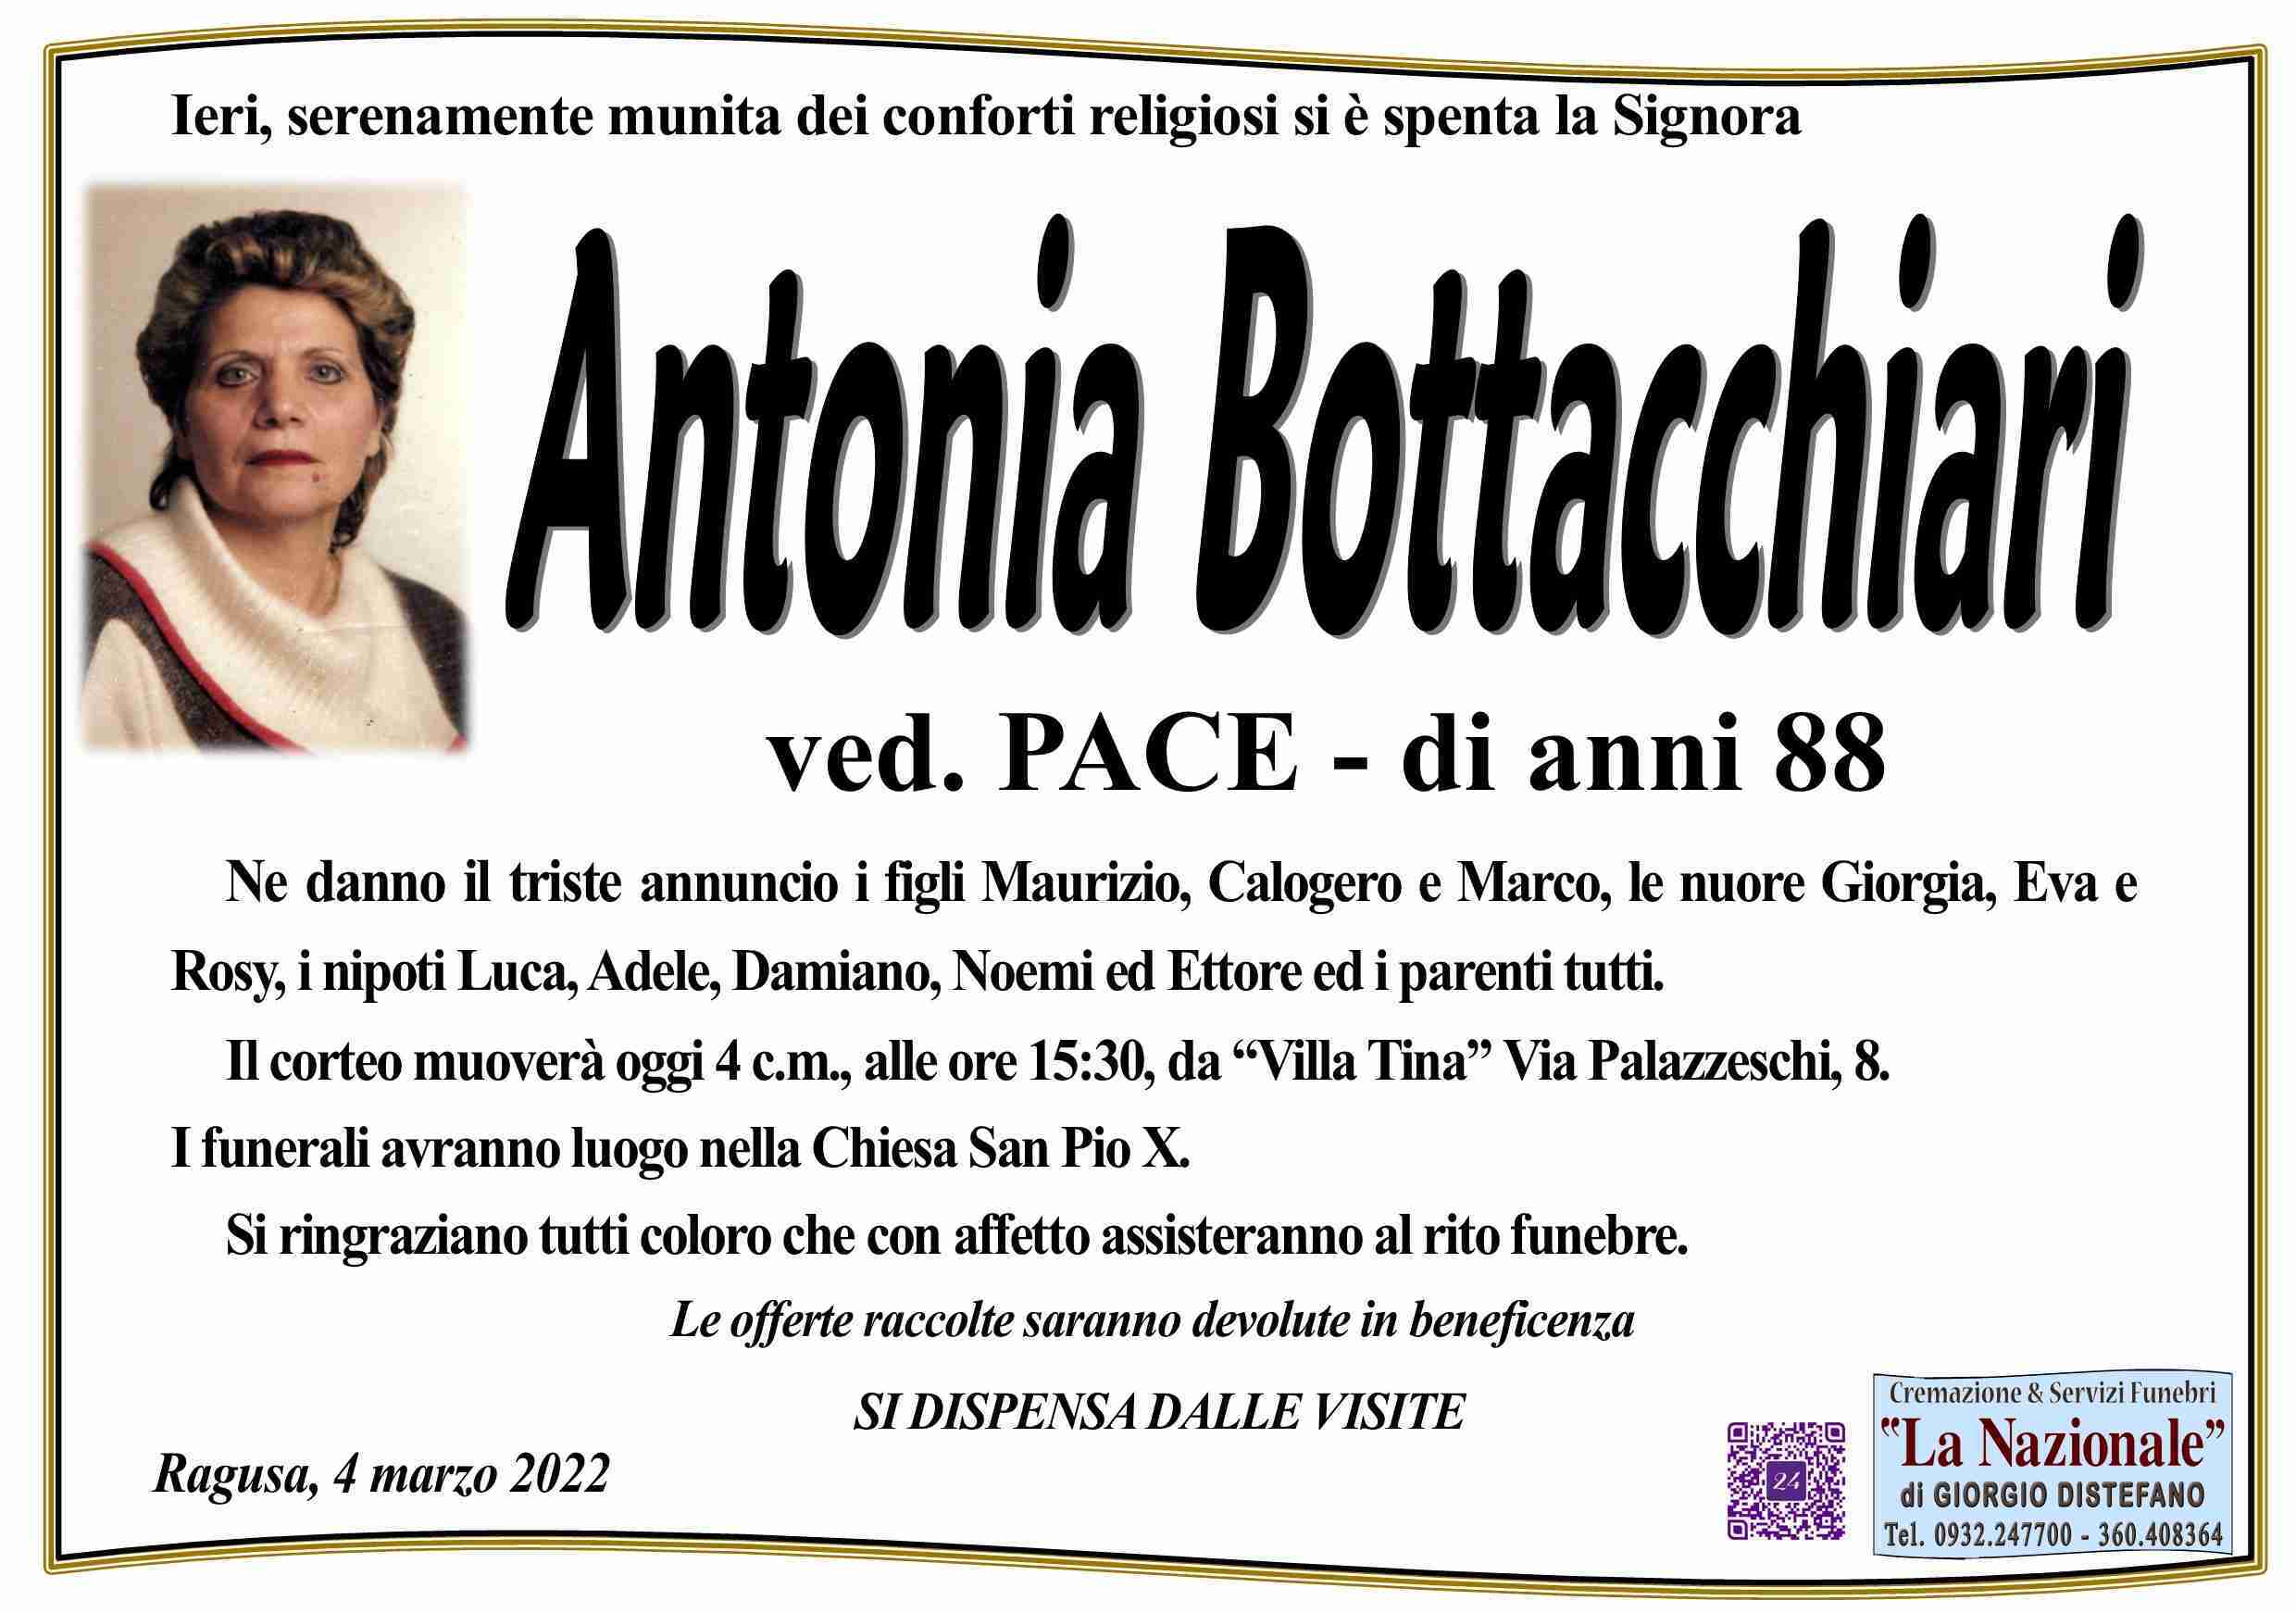 Antonia Bottacchiari